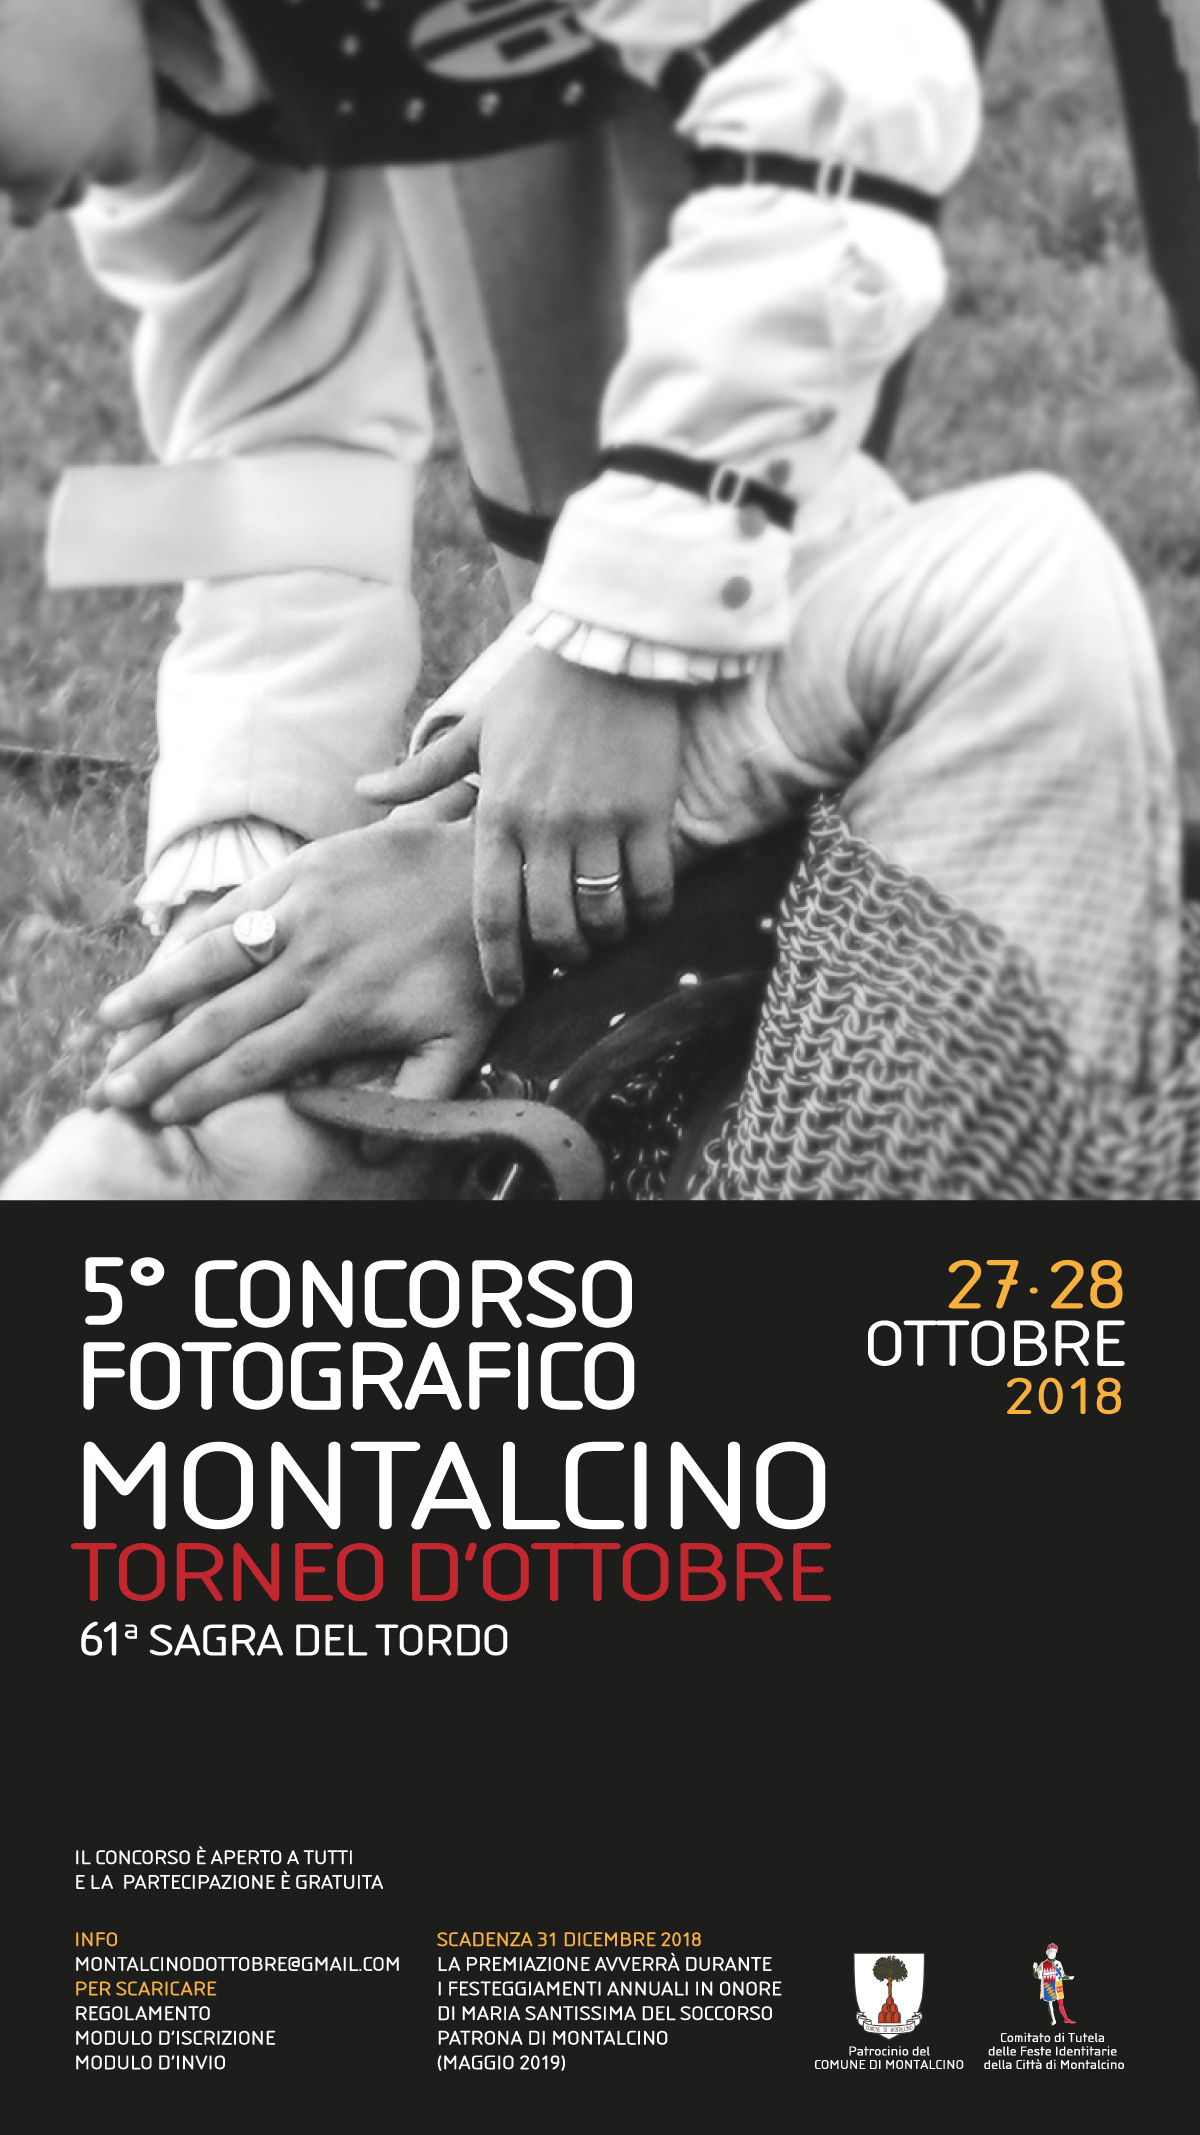 5^ concorso fotografico “Montalcino, Torneo d‘ Ottobre“